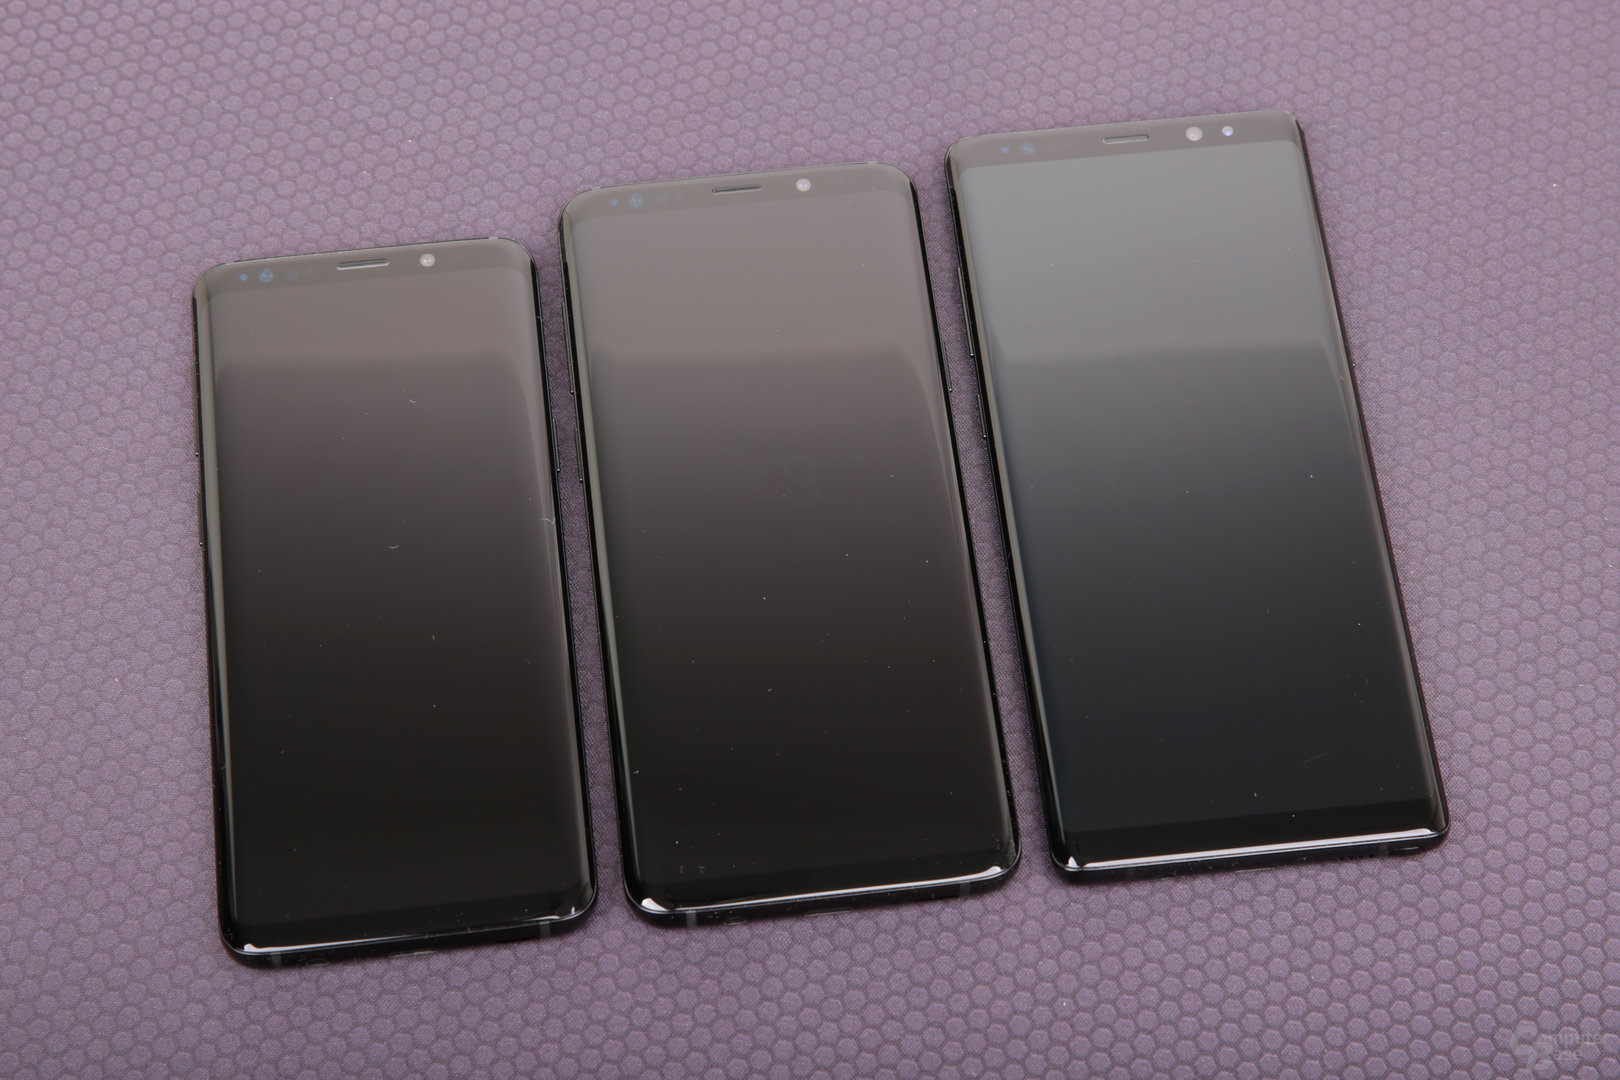 Galaxy S9, S9+ und Note 8 im Vergleich